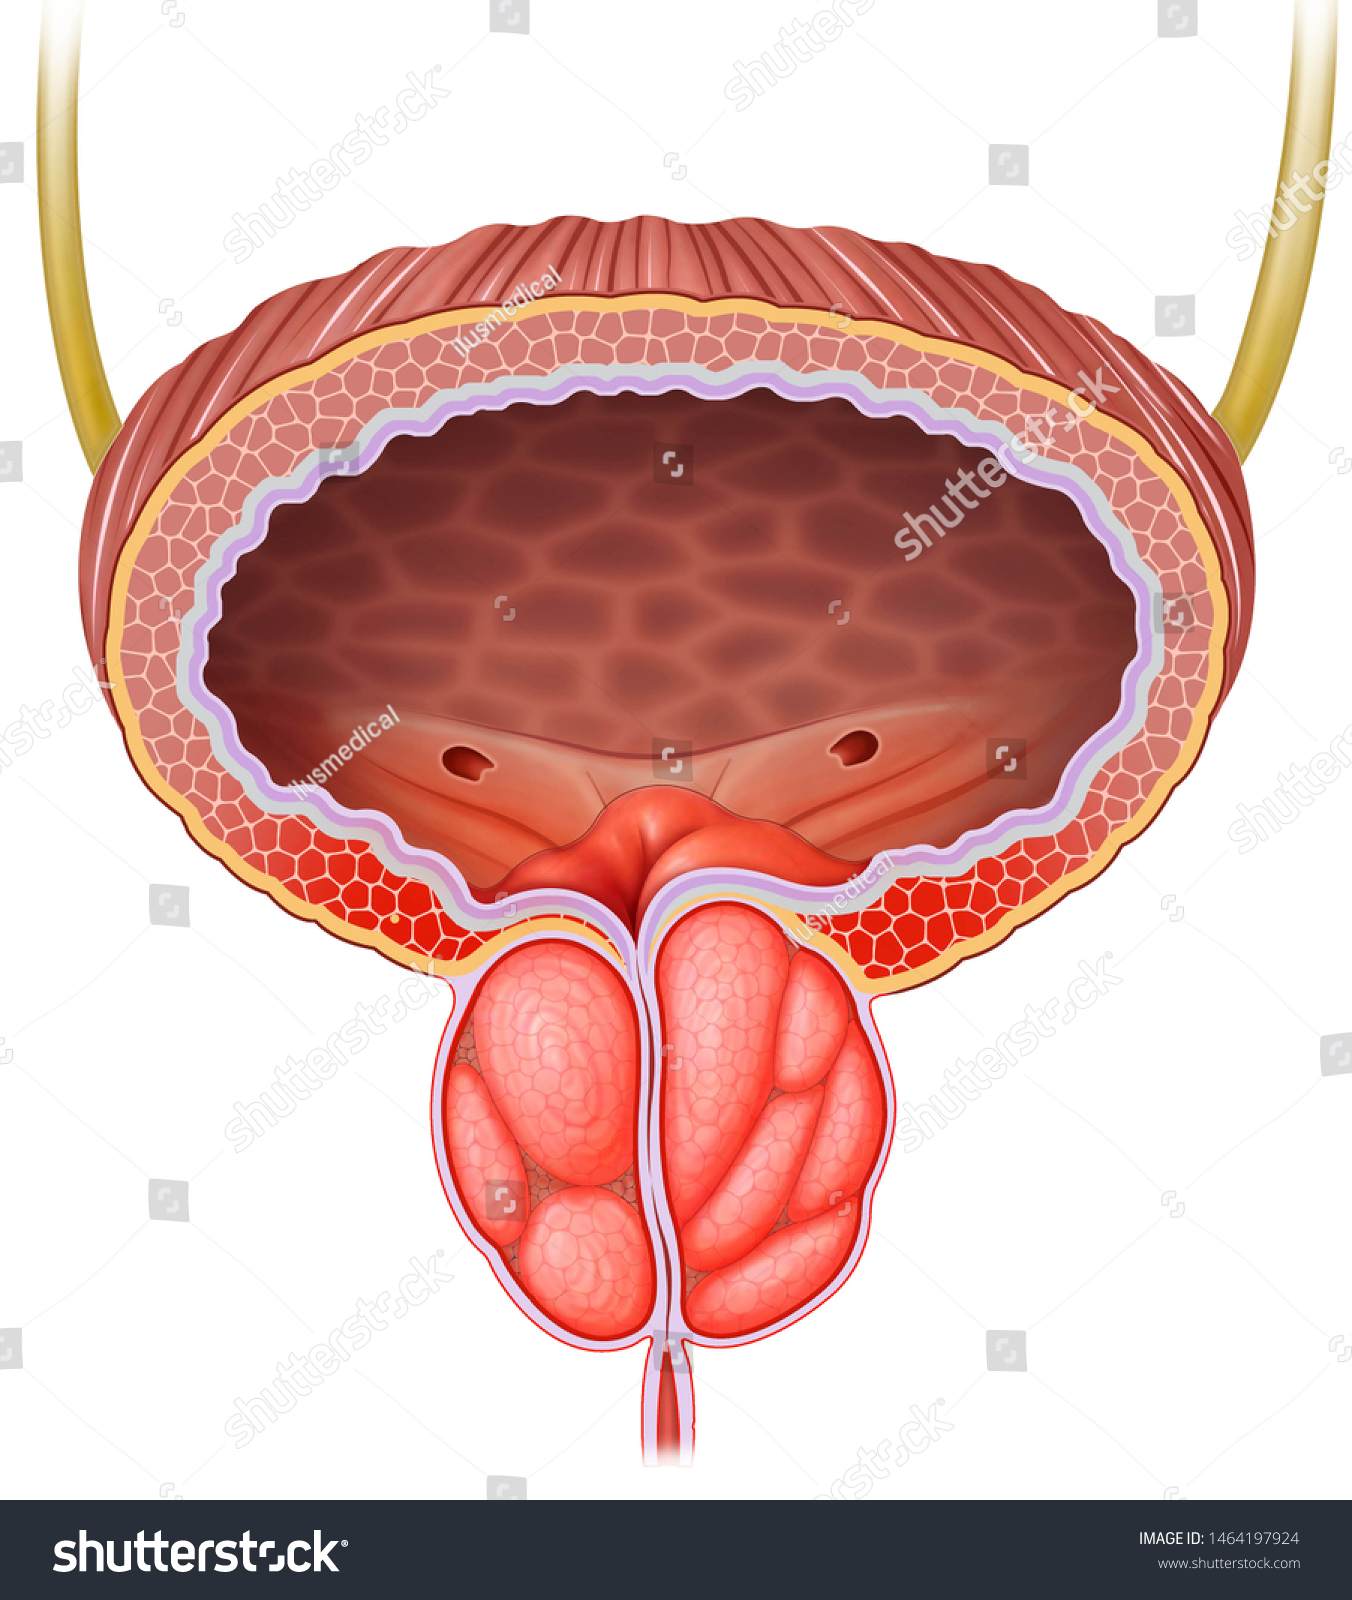 Простата у человека. Предстательная железа, Prostata. Аденома простаты анатомия. Простата и предстательная железа. Простата у мужчин.